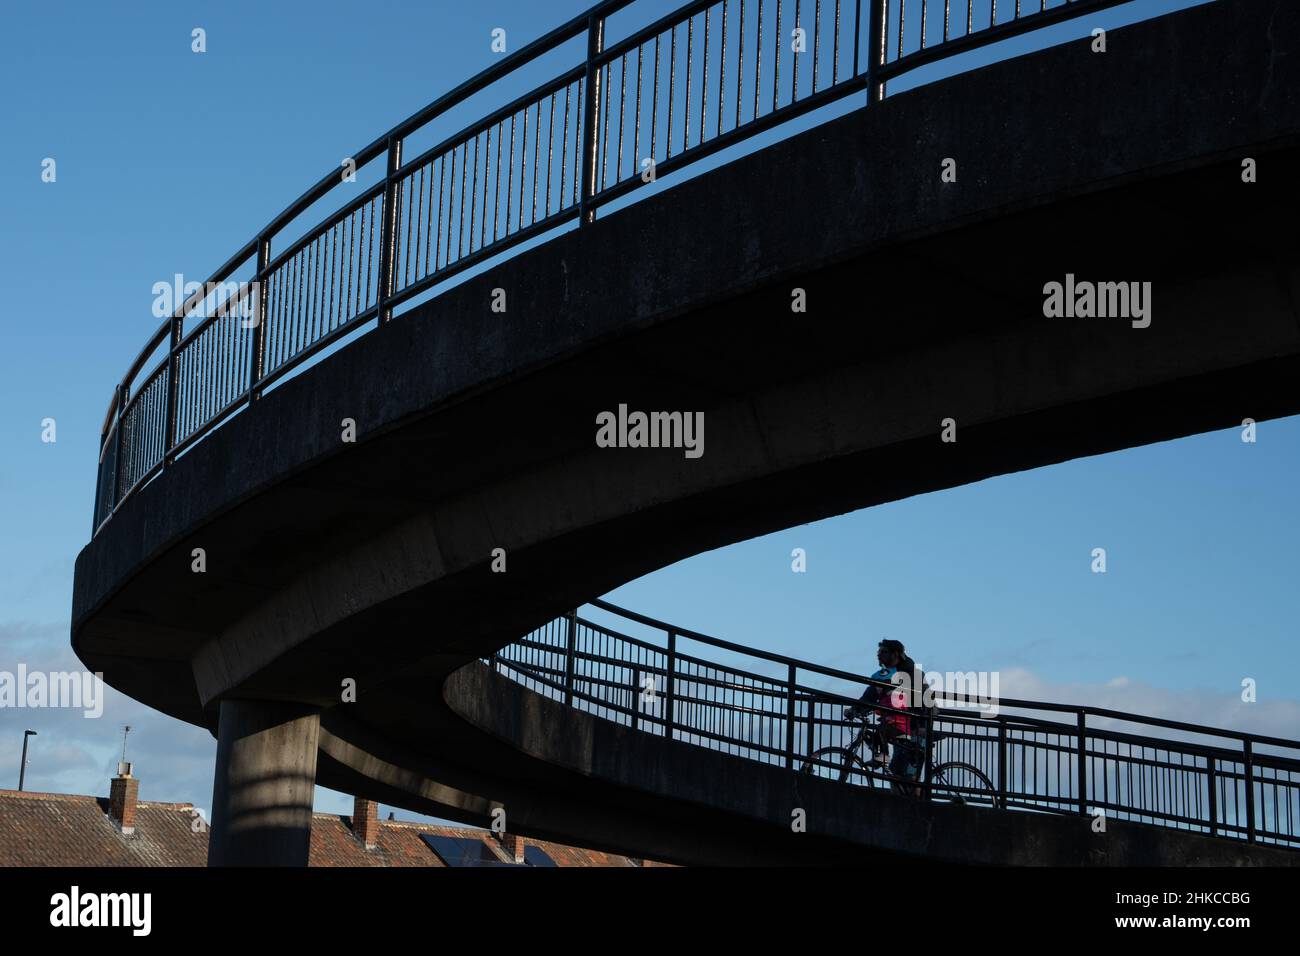 Ein Mann und ein Kind in Silhouette teilen sich ein Fahrrad, das eine Fahrradrampe am Bahnhof Longbenton, North Tyneside, Großbritannien, hinauffährt. Konzept des nachhaltigen Reisens. Stockfoto